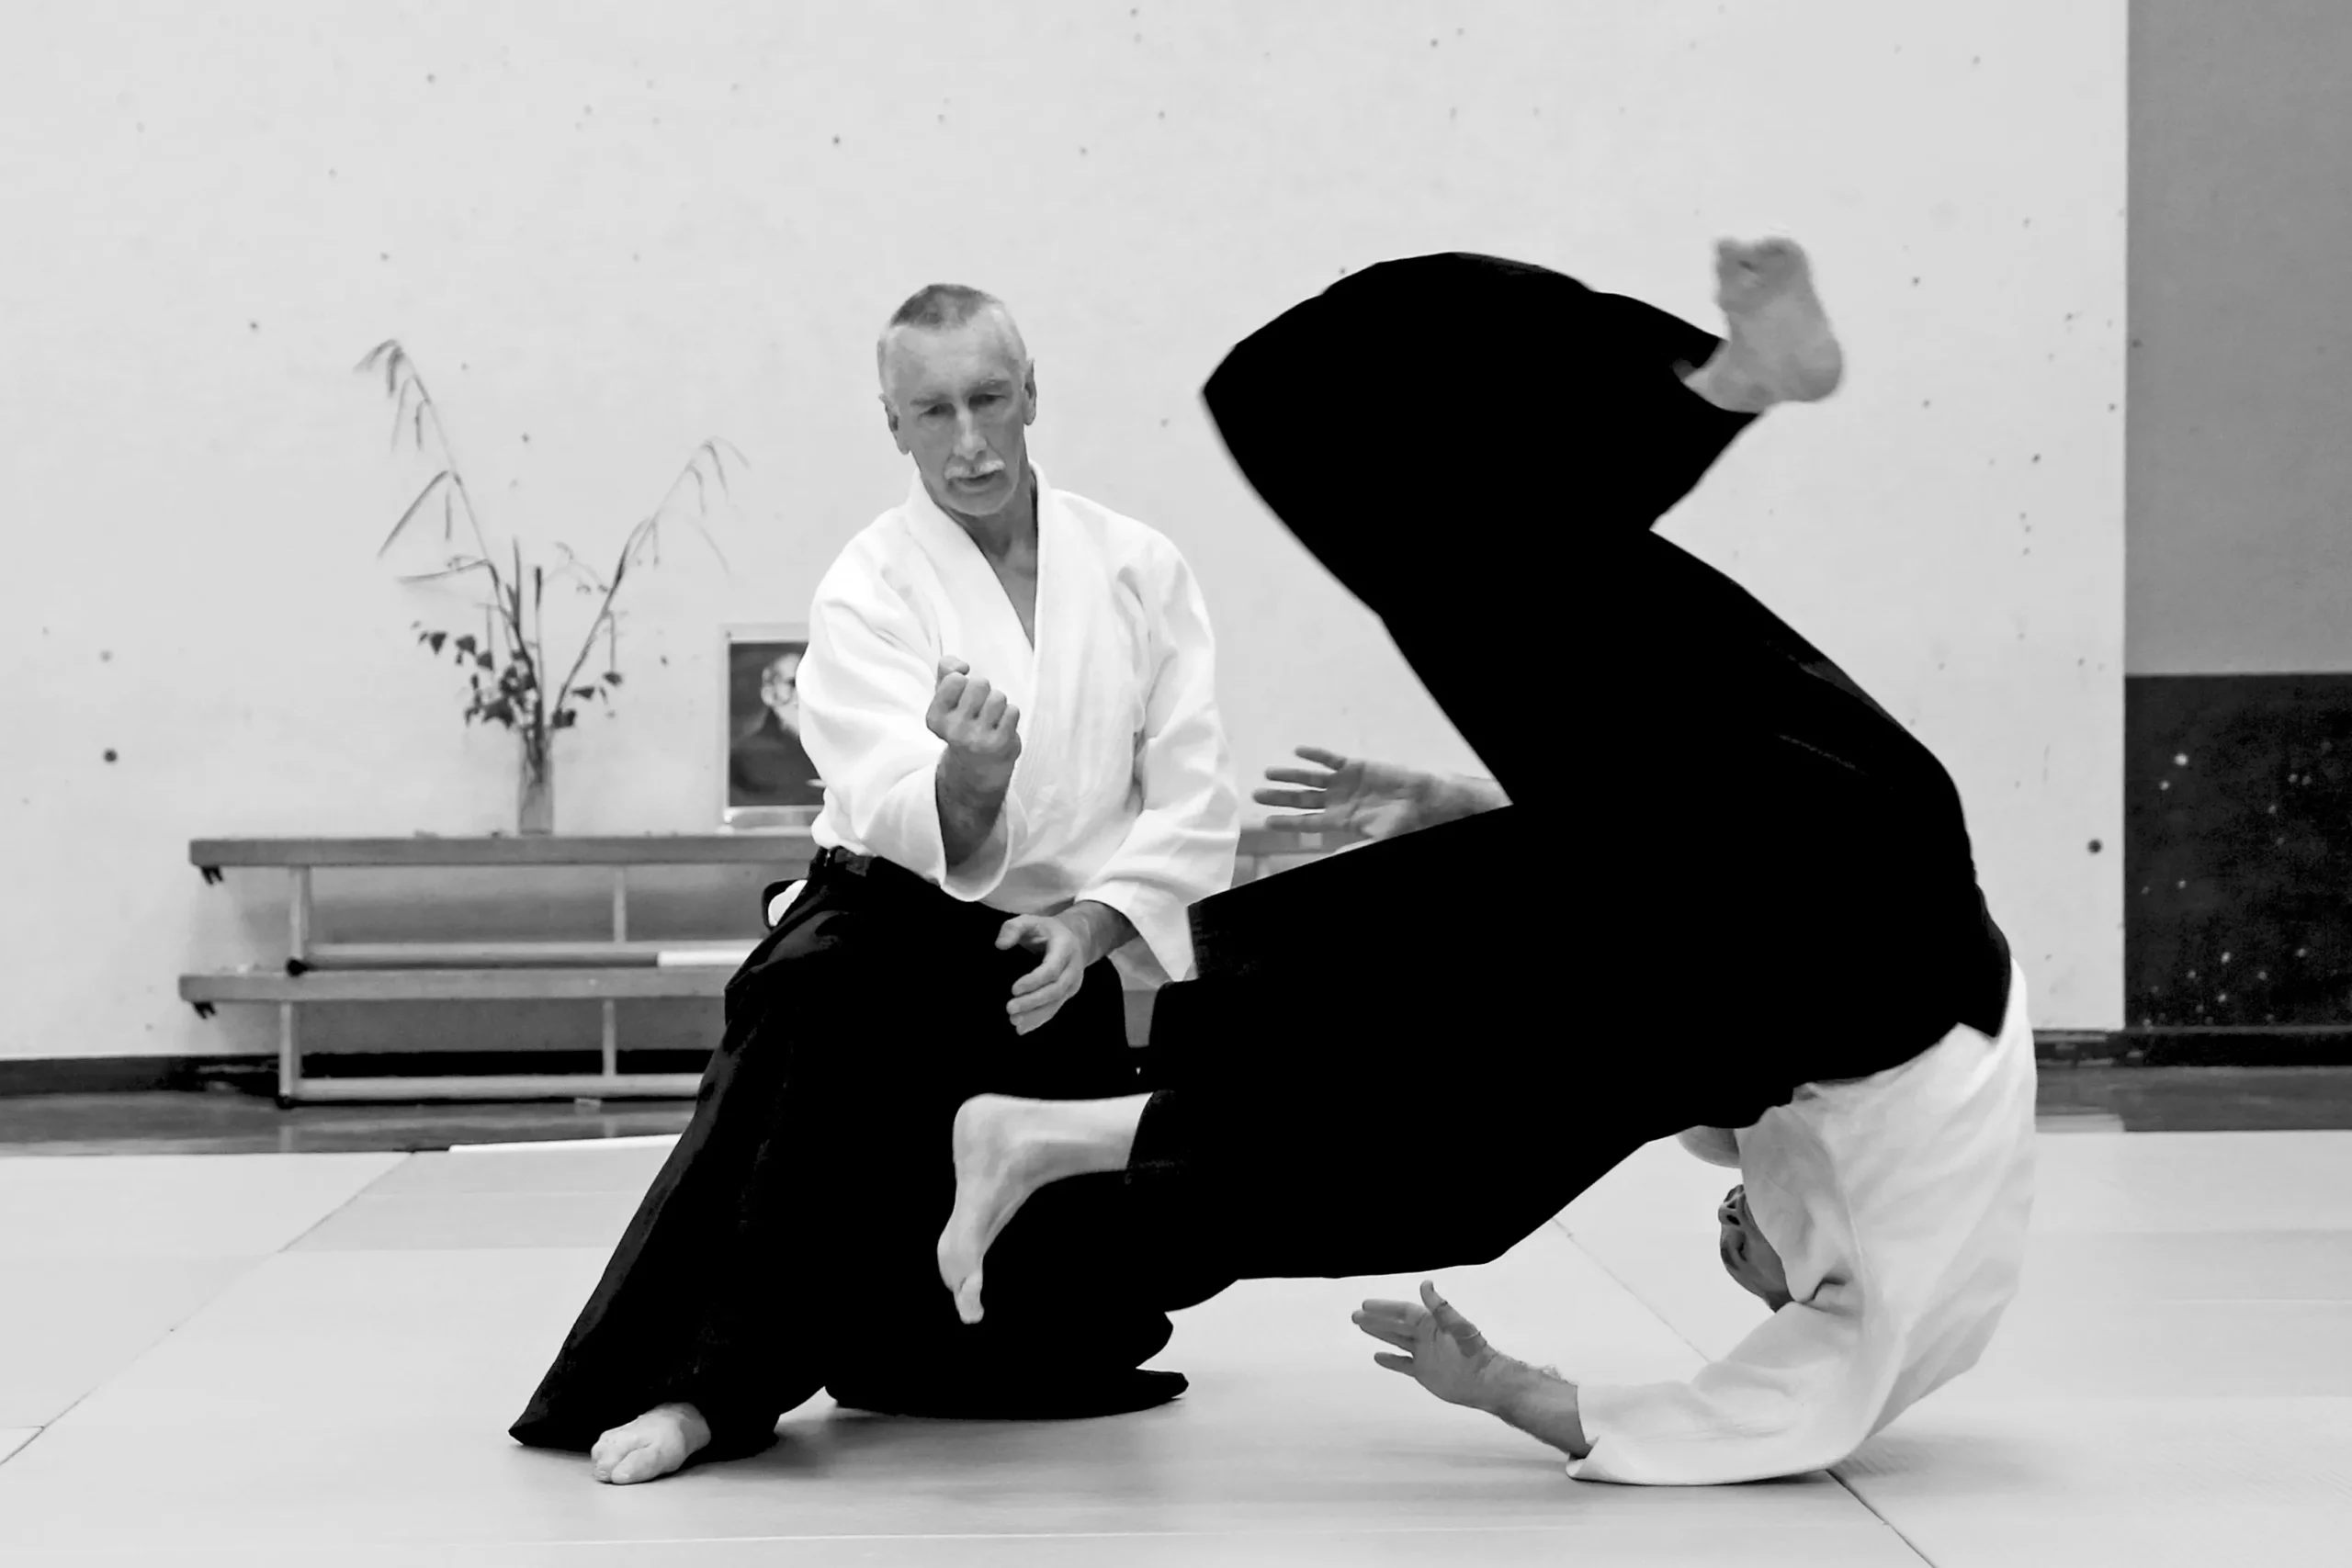 El Aikido: Arte marcial centrado en la armonía y la autodefensa